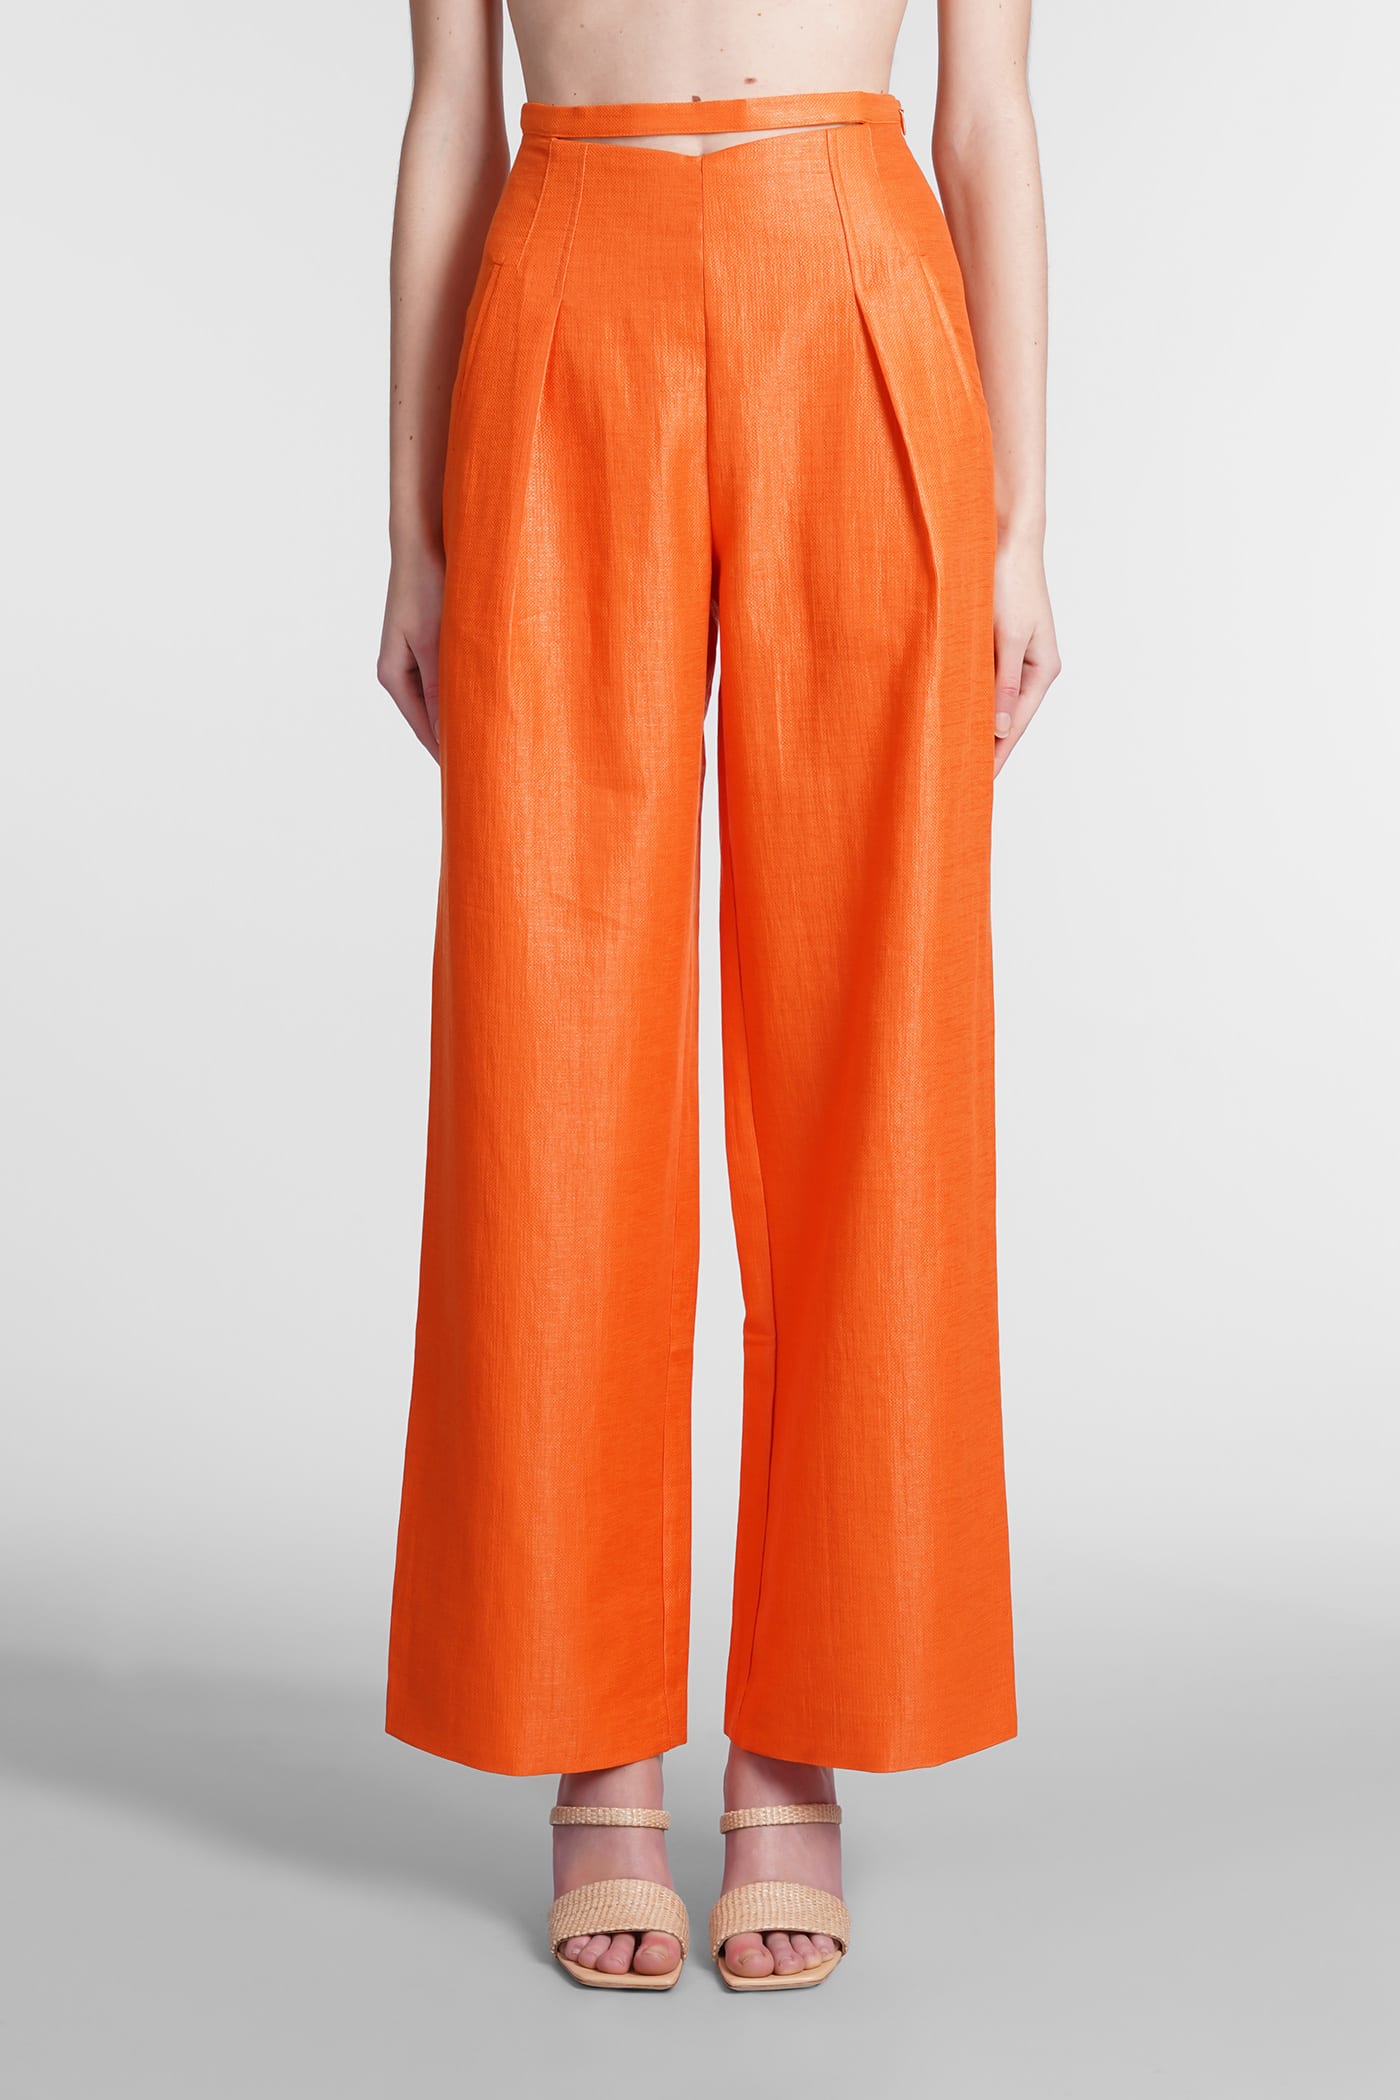 Cult Gaia Tasha Pants In Orange Cotton